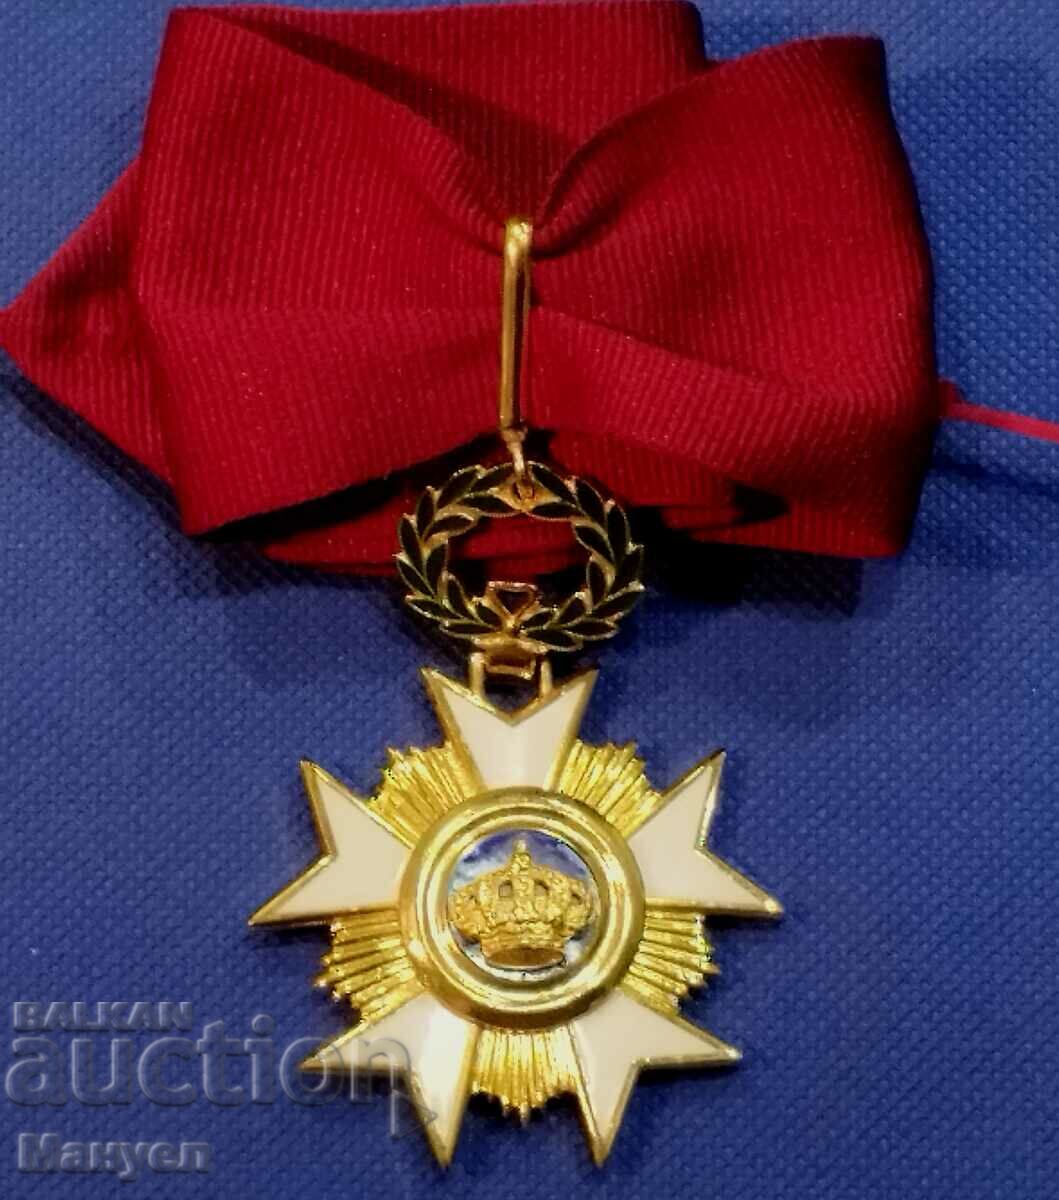 Βασίλειο του Βελγίου "Order of the Crown" Commander III St for shi